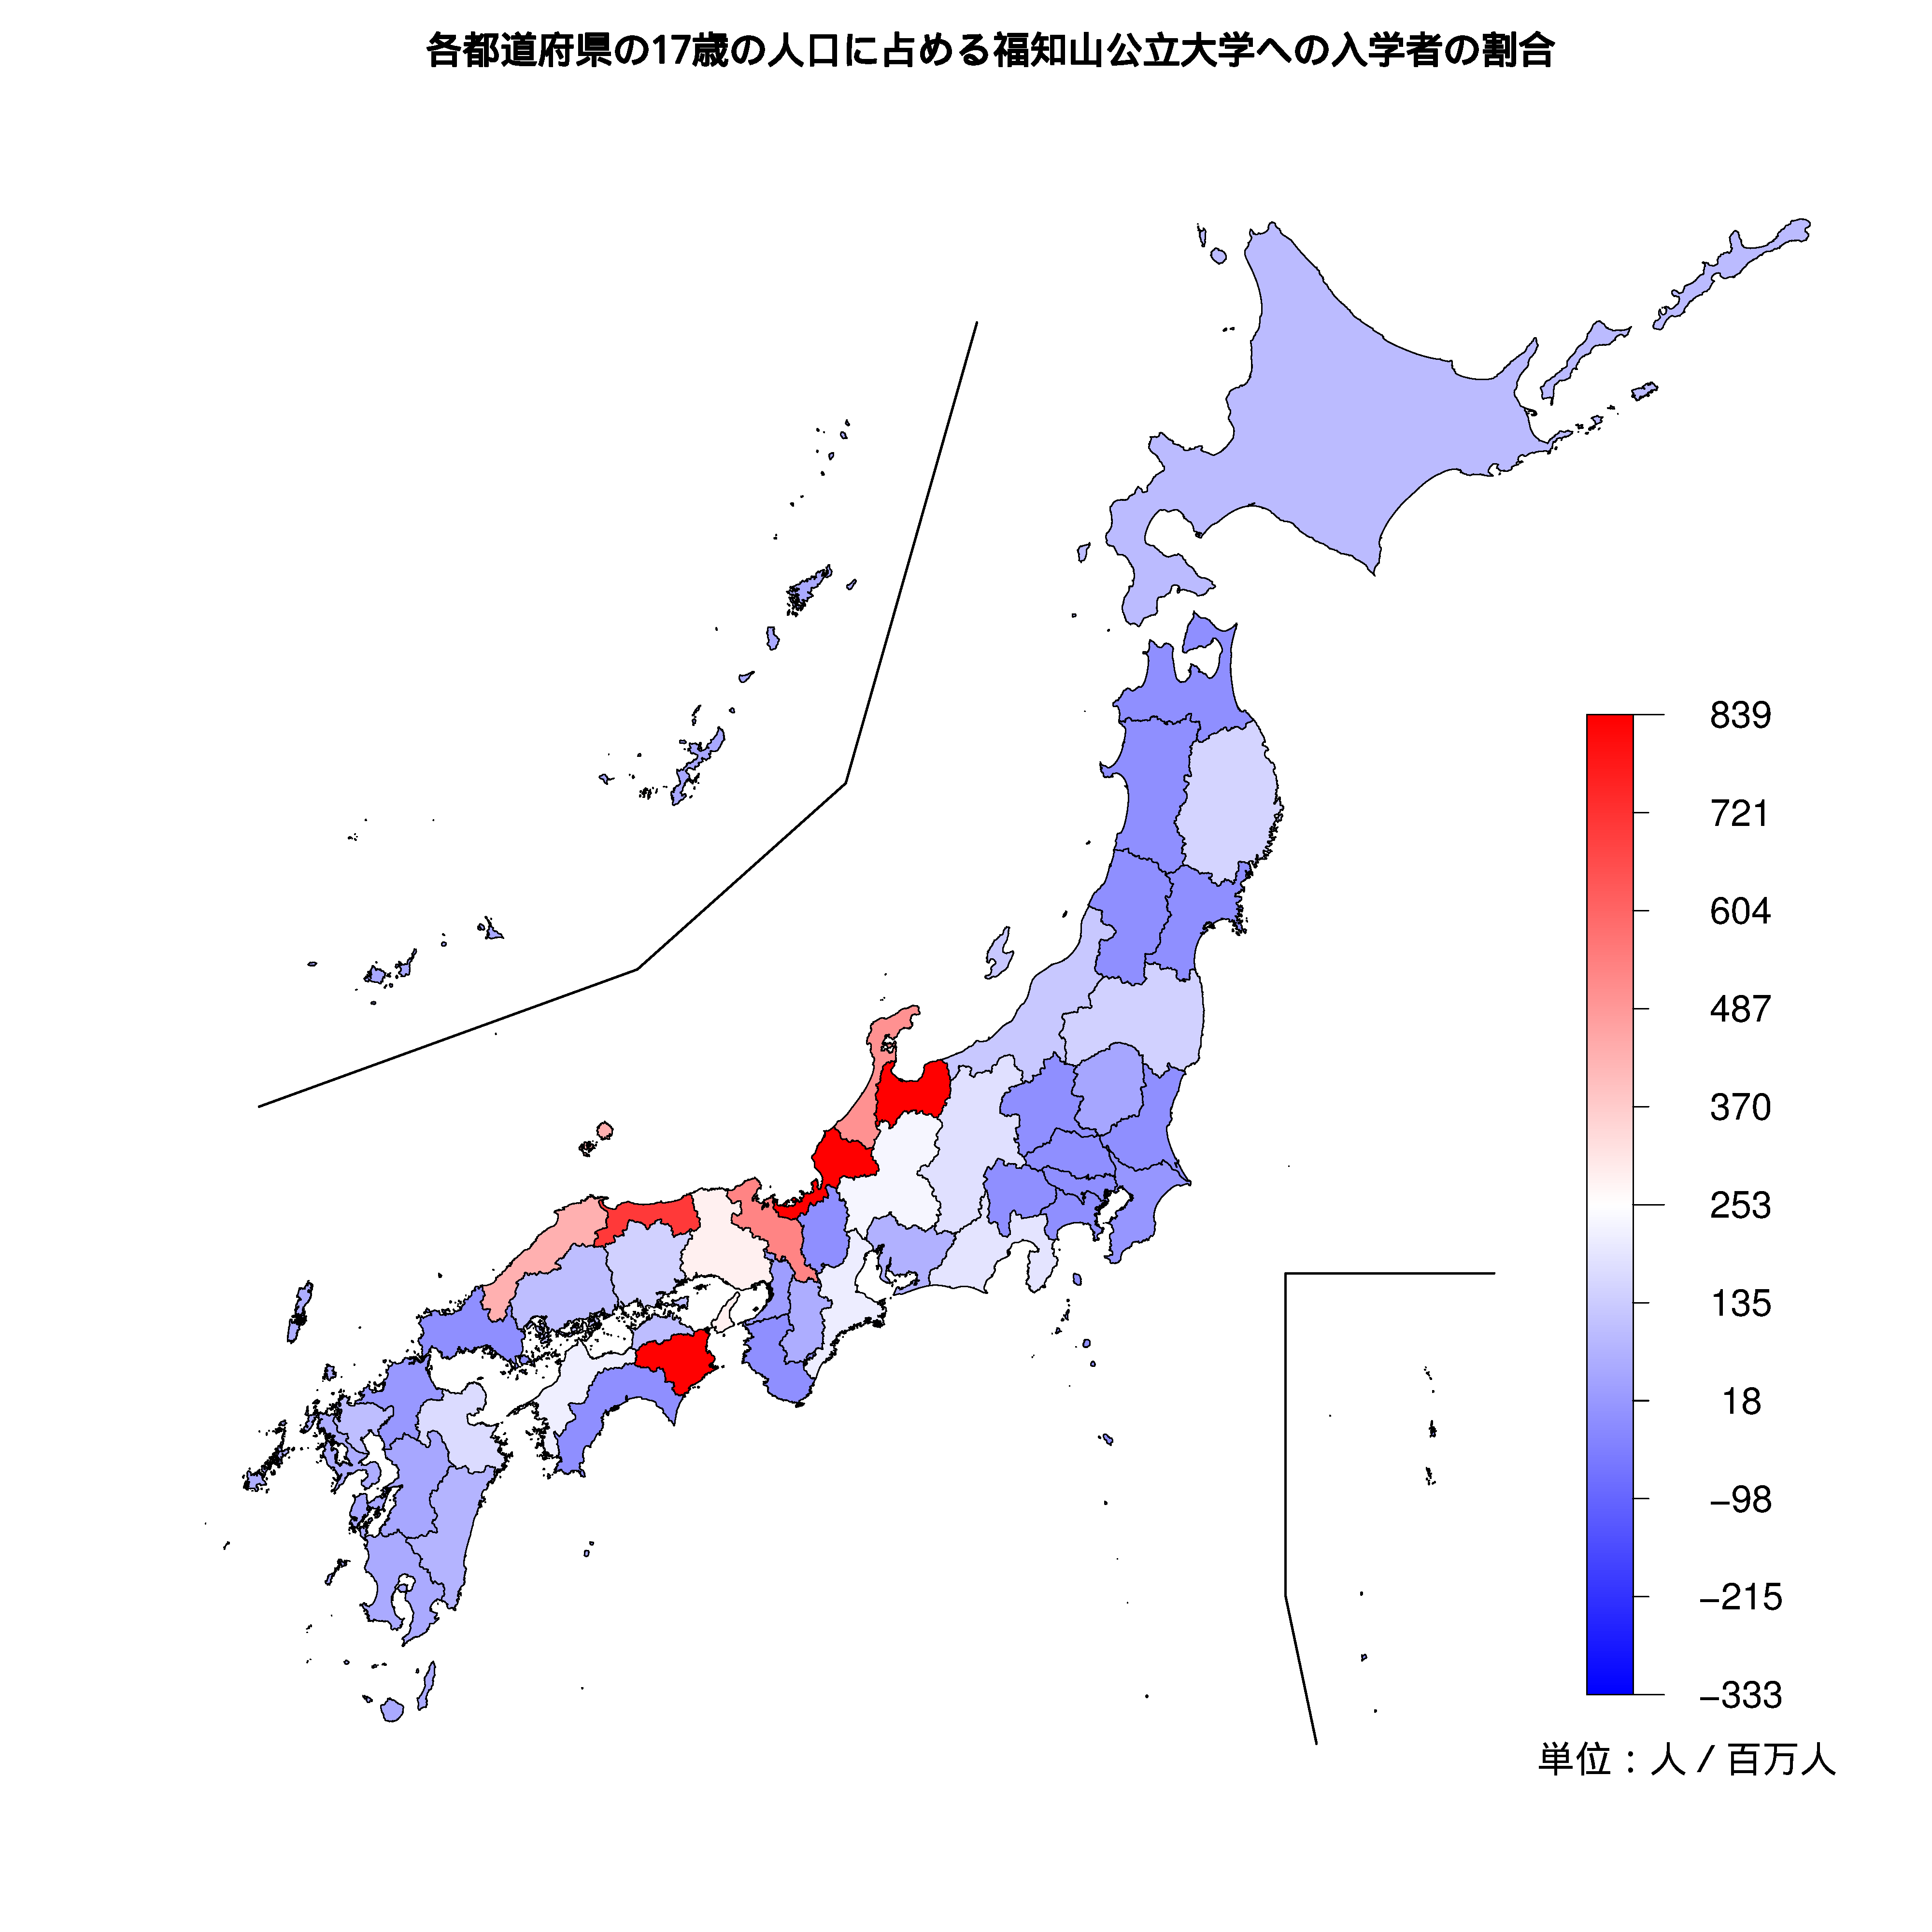 福知山公立大学への入学者が多い都道府県の色分け地図